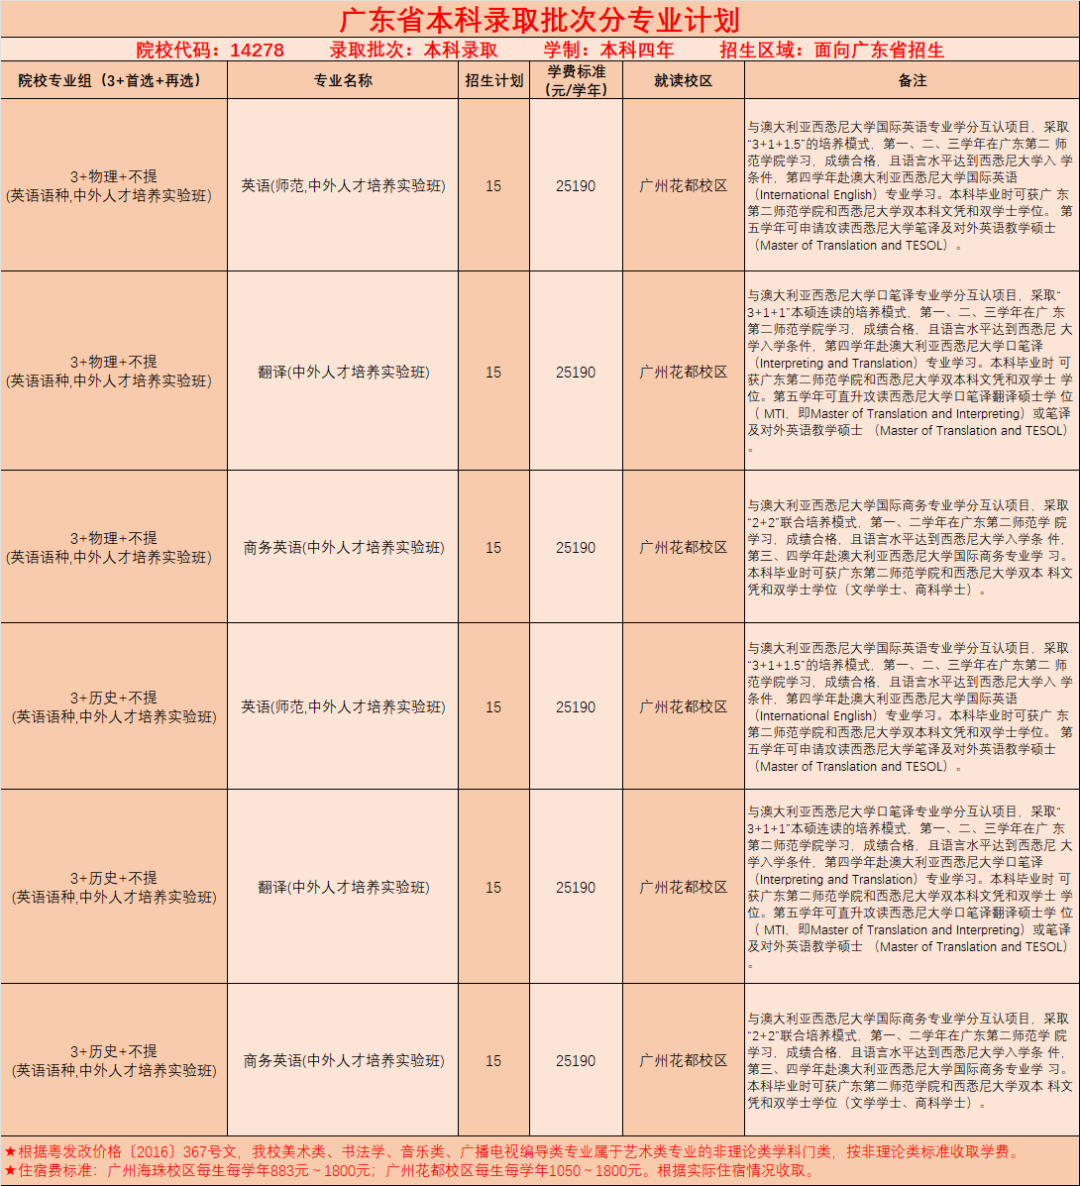 广东第二师范学院2024年普通高考招生计划